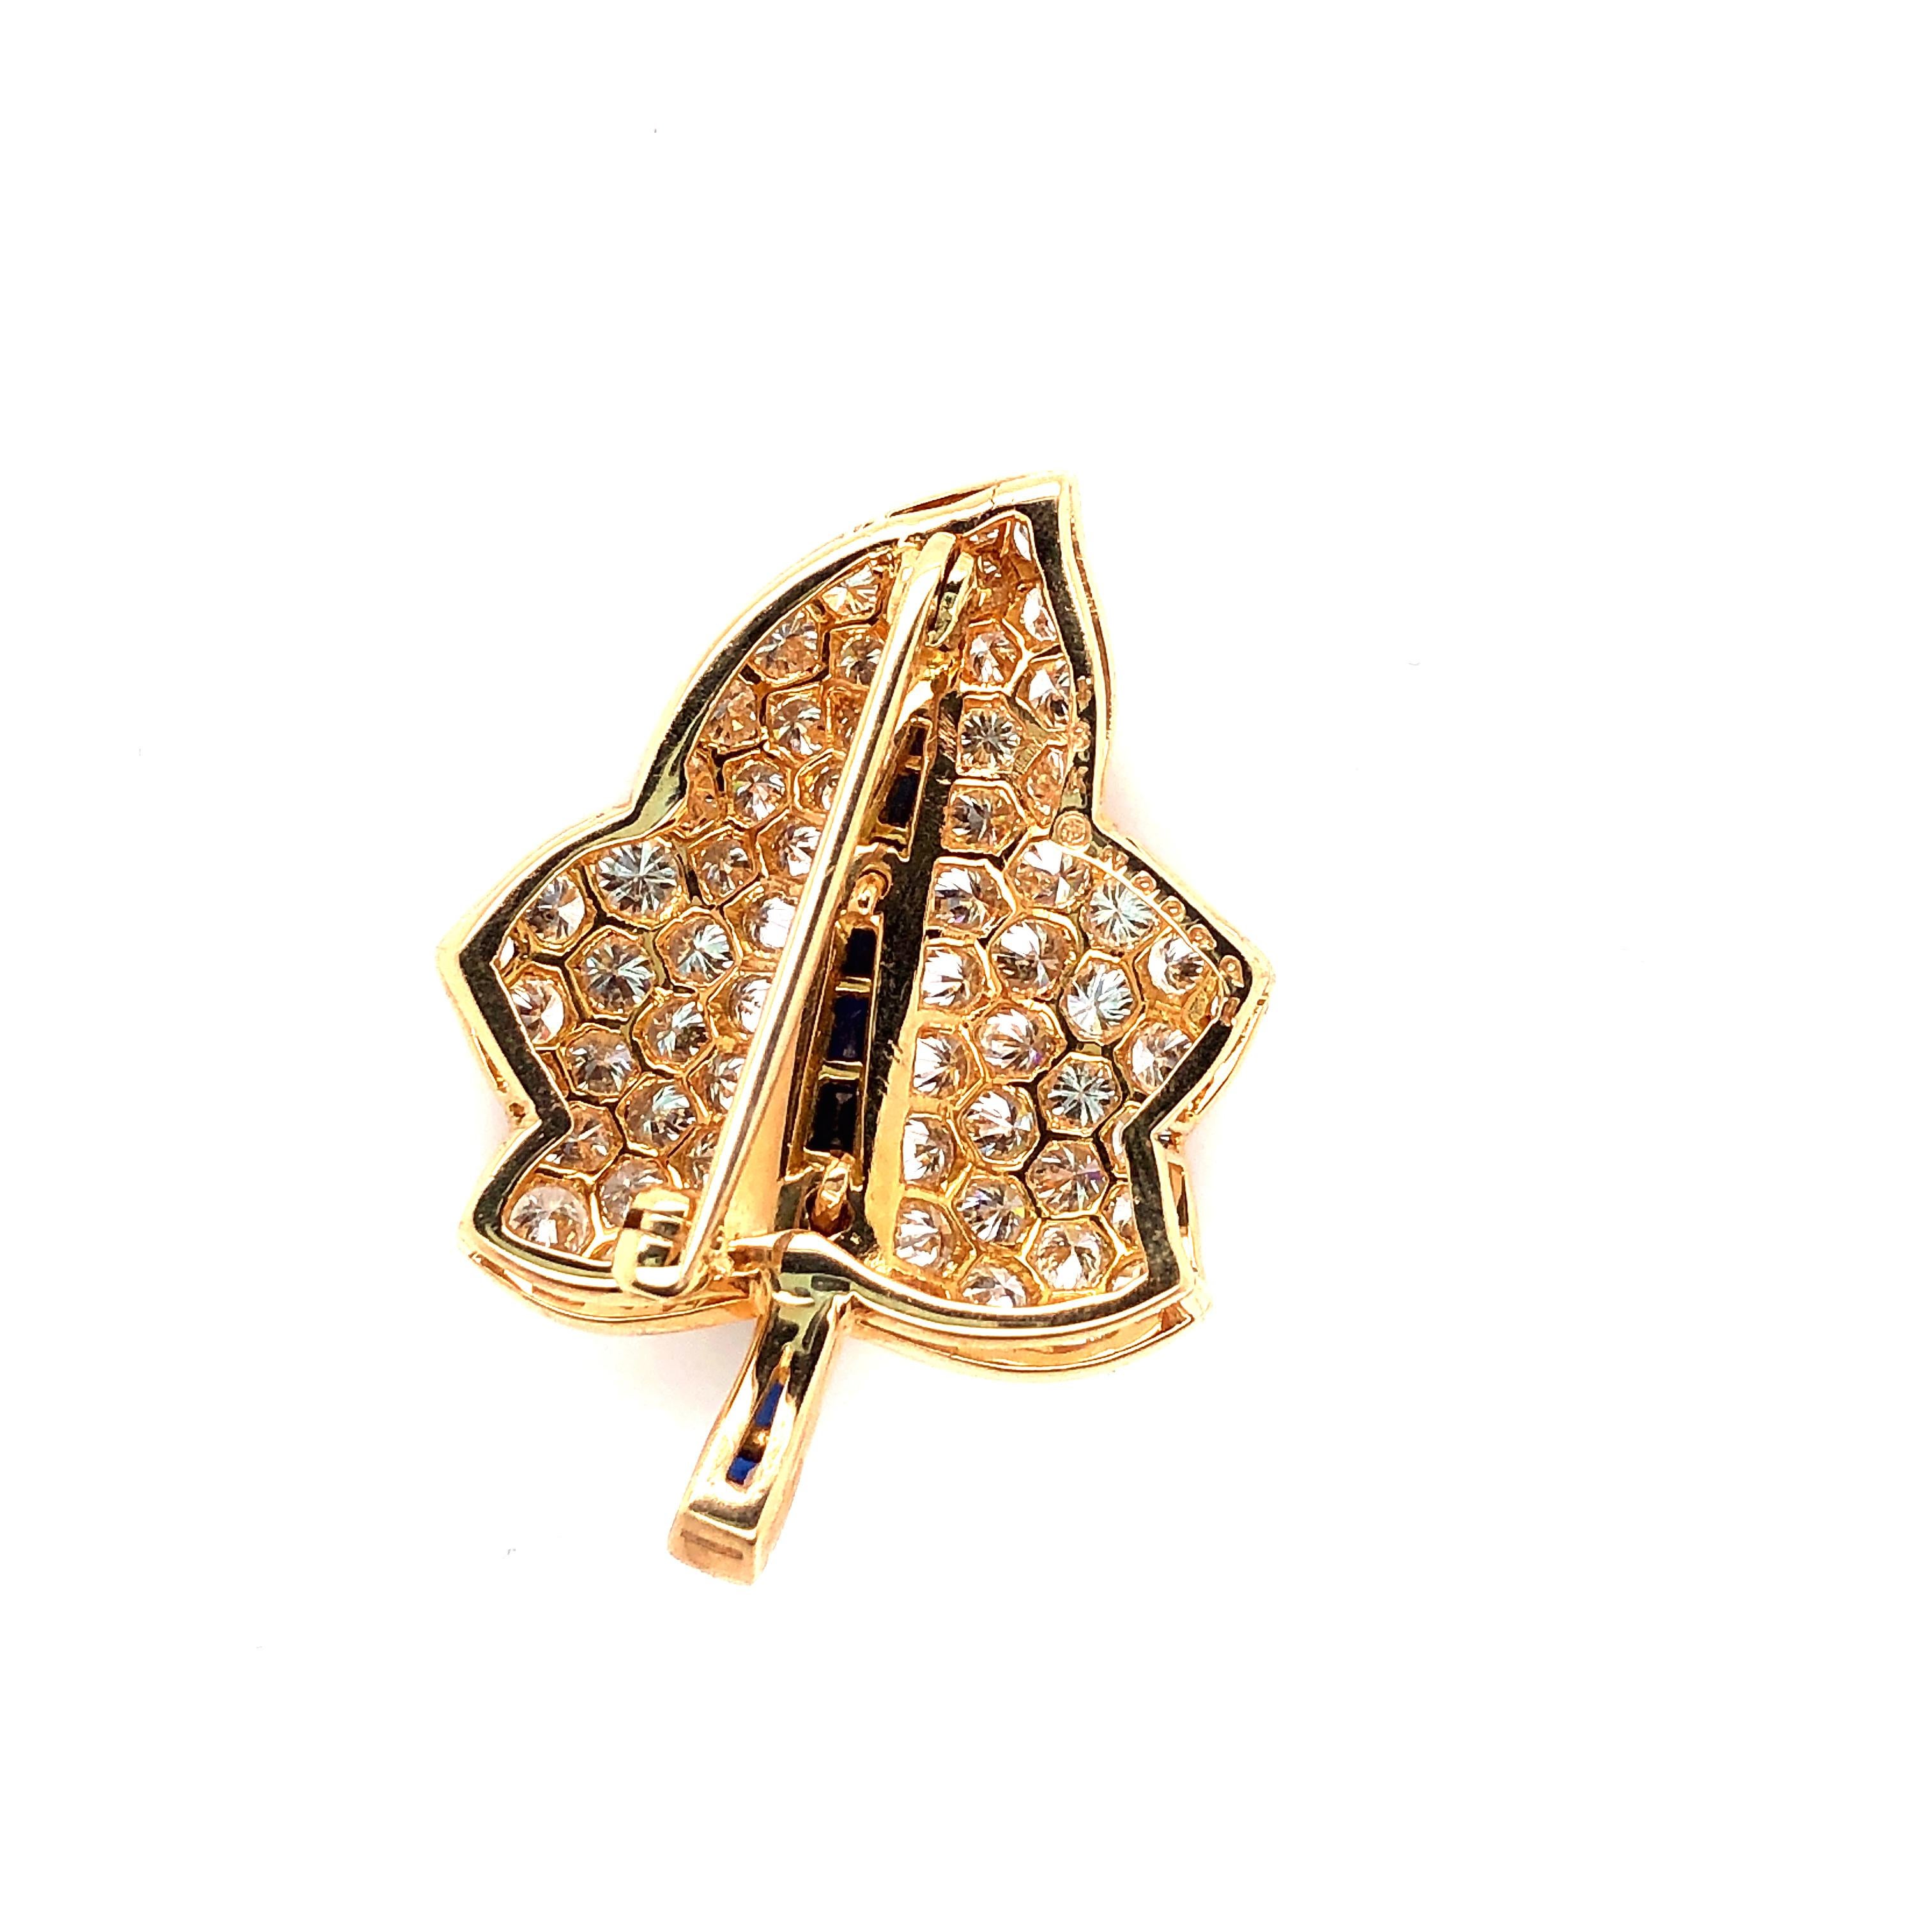 La broche feuille d'érable en or jaune 18 carats Oscar Heyman contient 66 diamants ronds pesant 3.23cts (F-G/VS+) et 10 saphirs baguette pesant 0.66cts. Elle est estampillée de la marque du fabricant, 18K, et du numéro de série 200992.

La broche